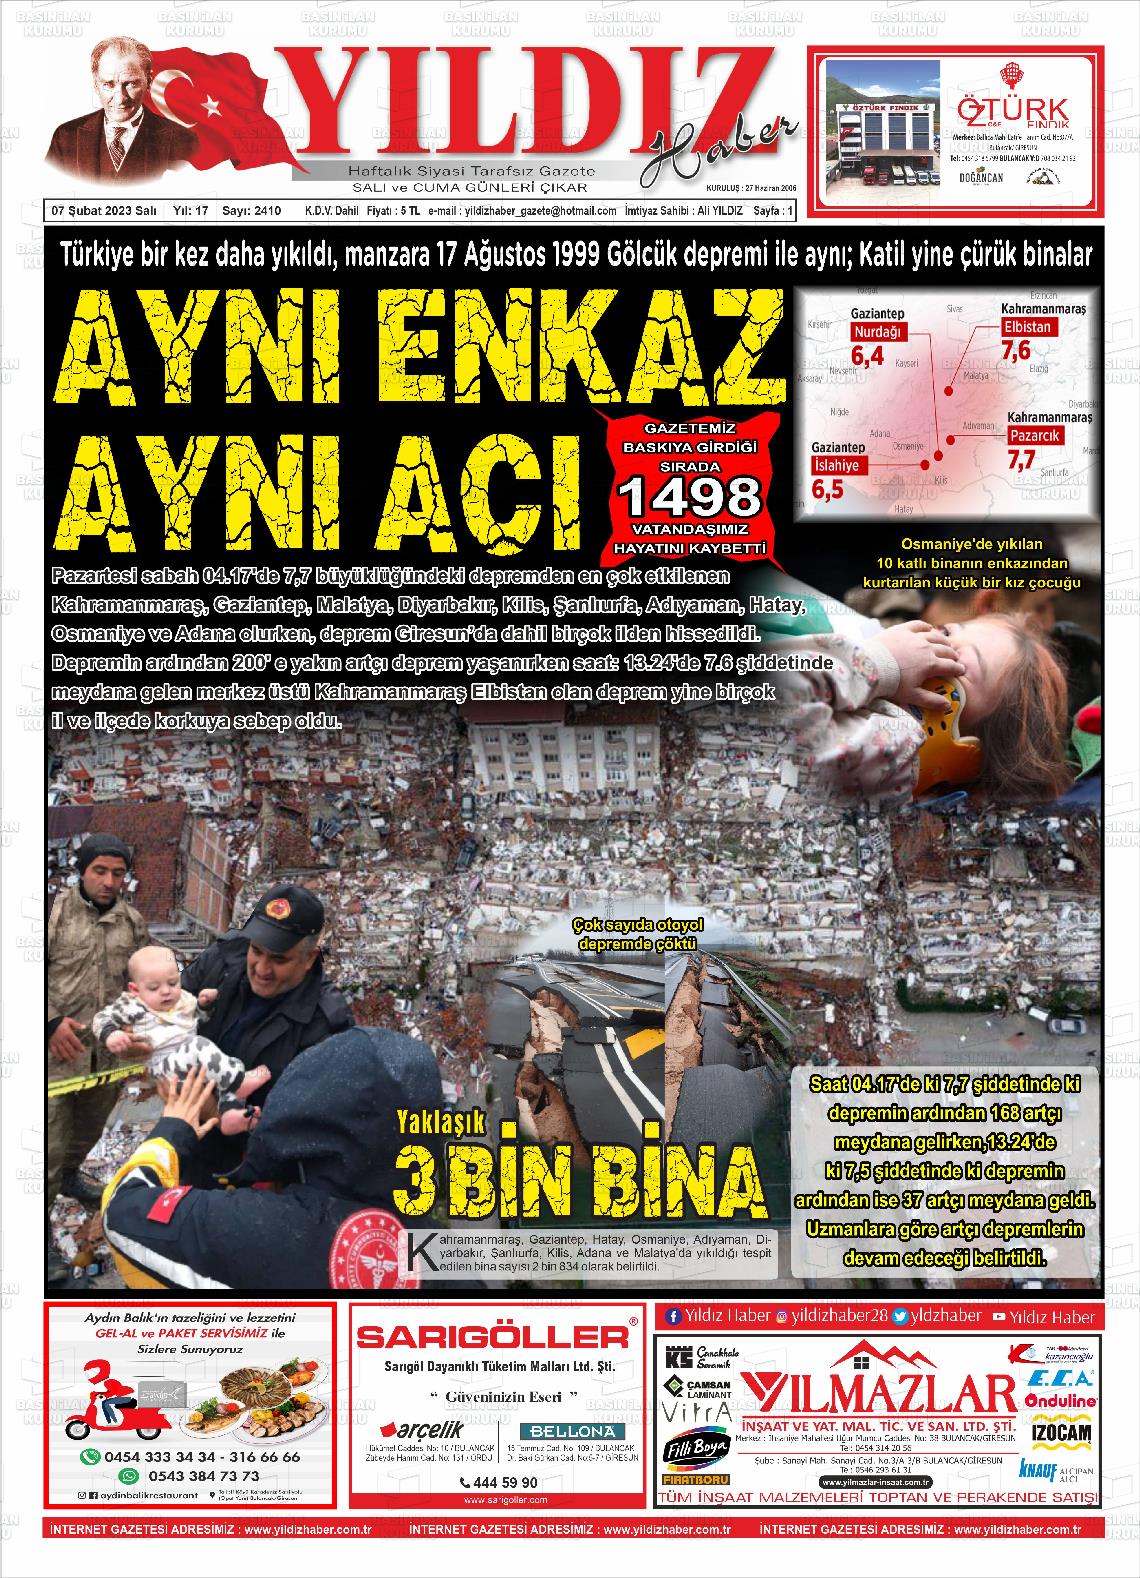 07 Şubat 2023 Yıldız Haber Gazete Manşeti